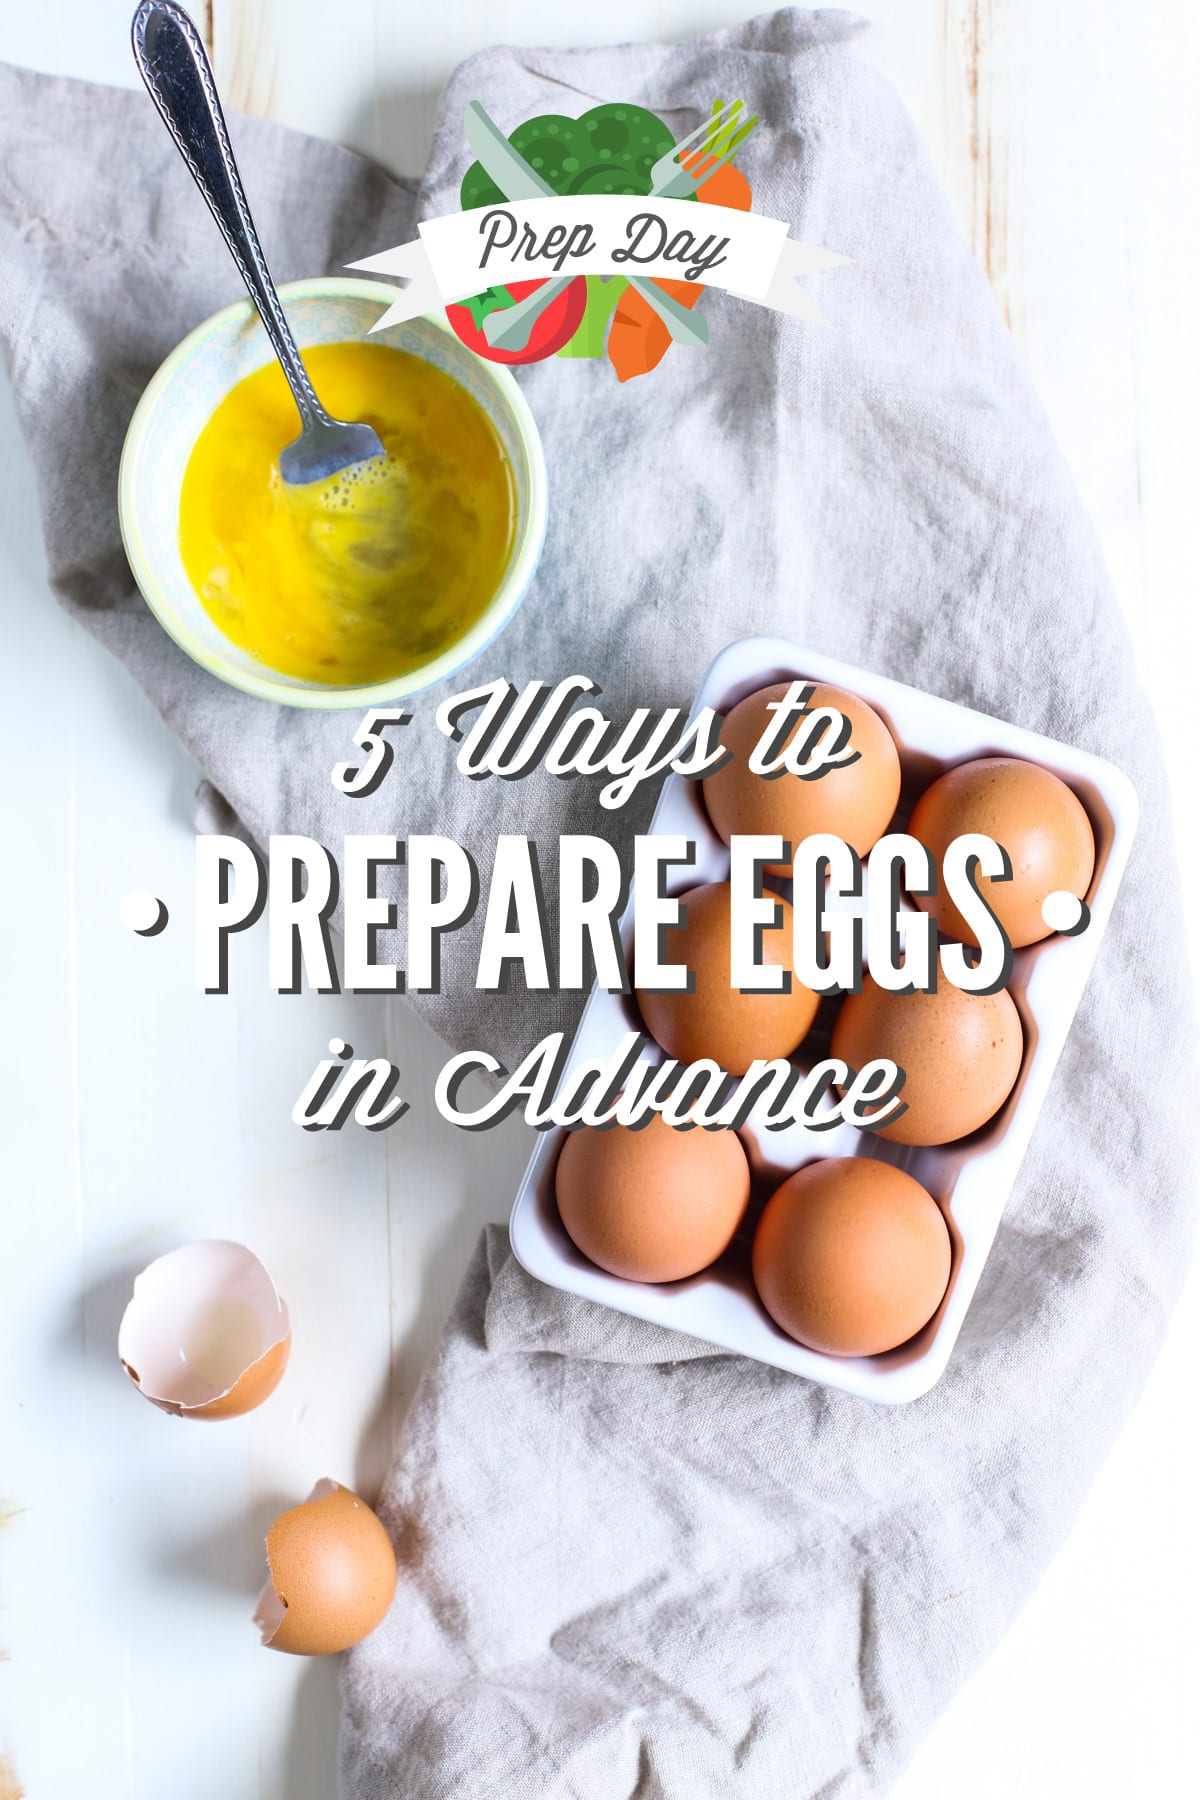 Prep Day: 5 Ways to Prepare Eggs In Advance